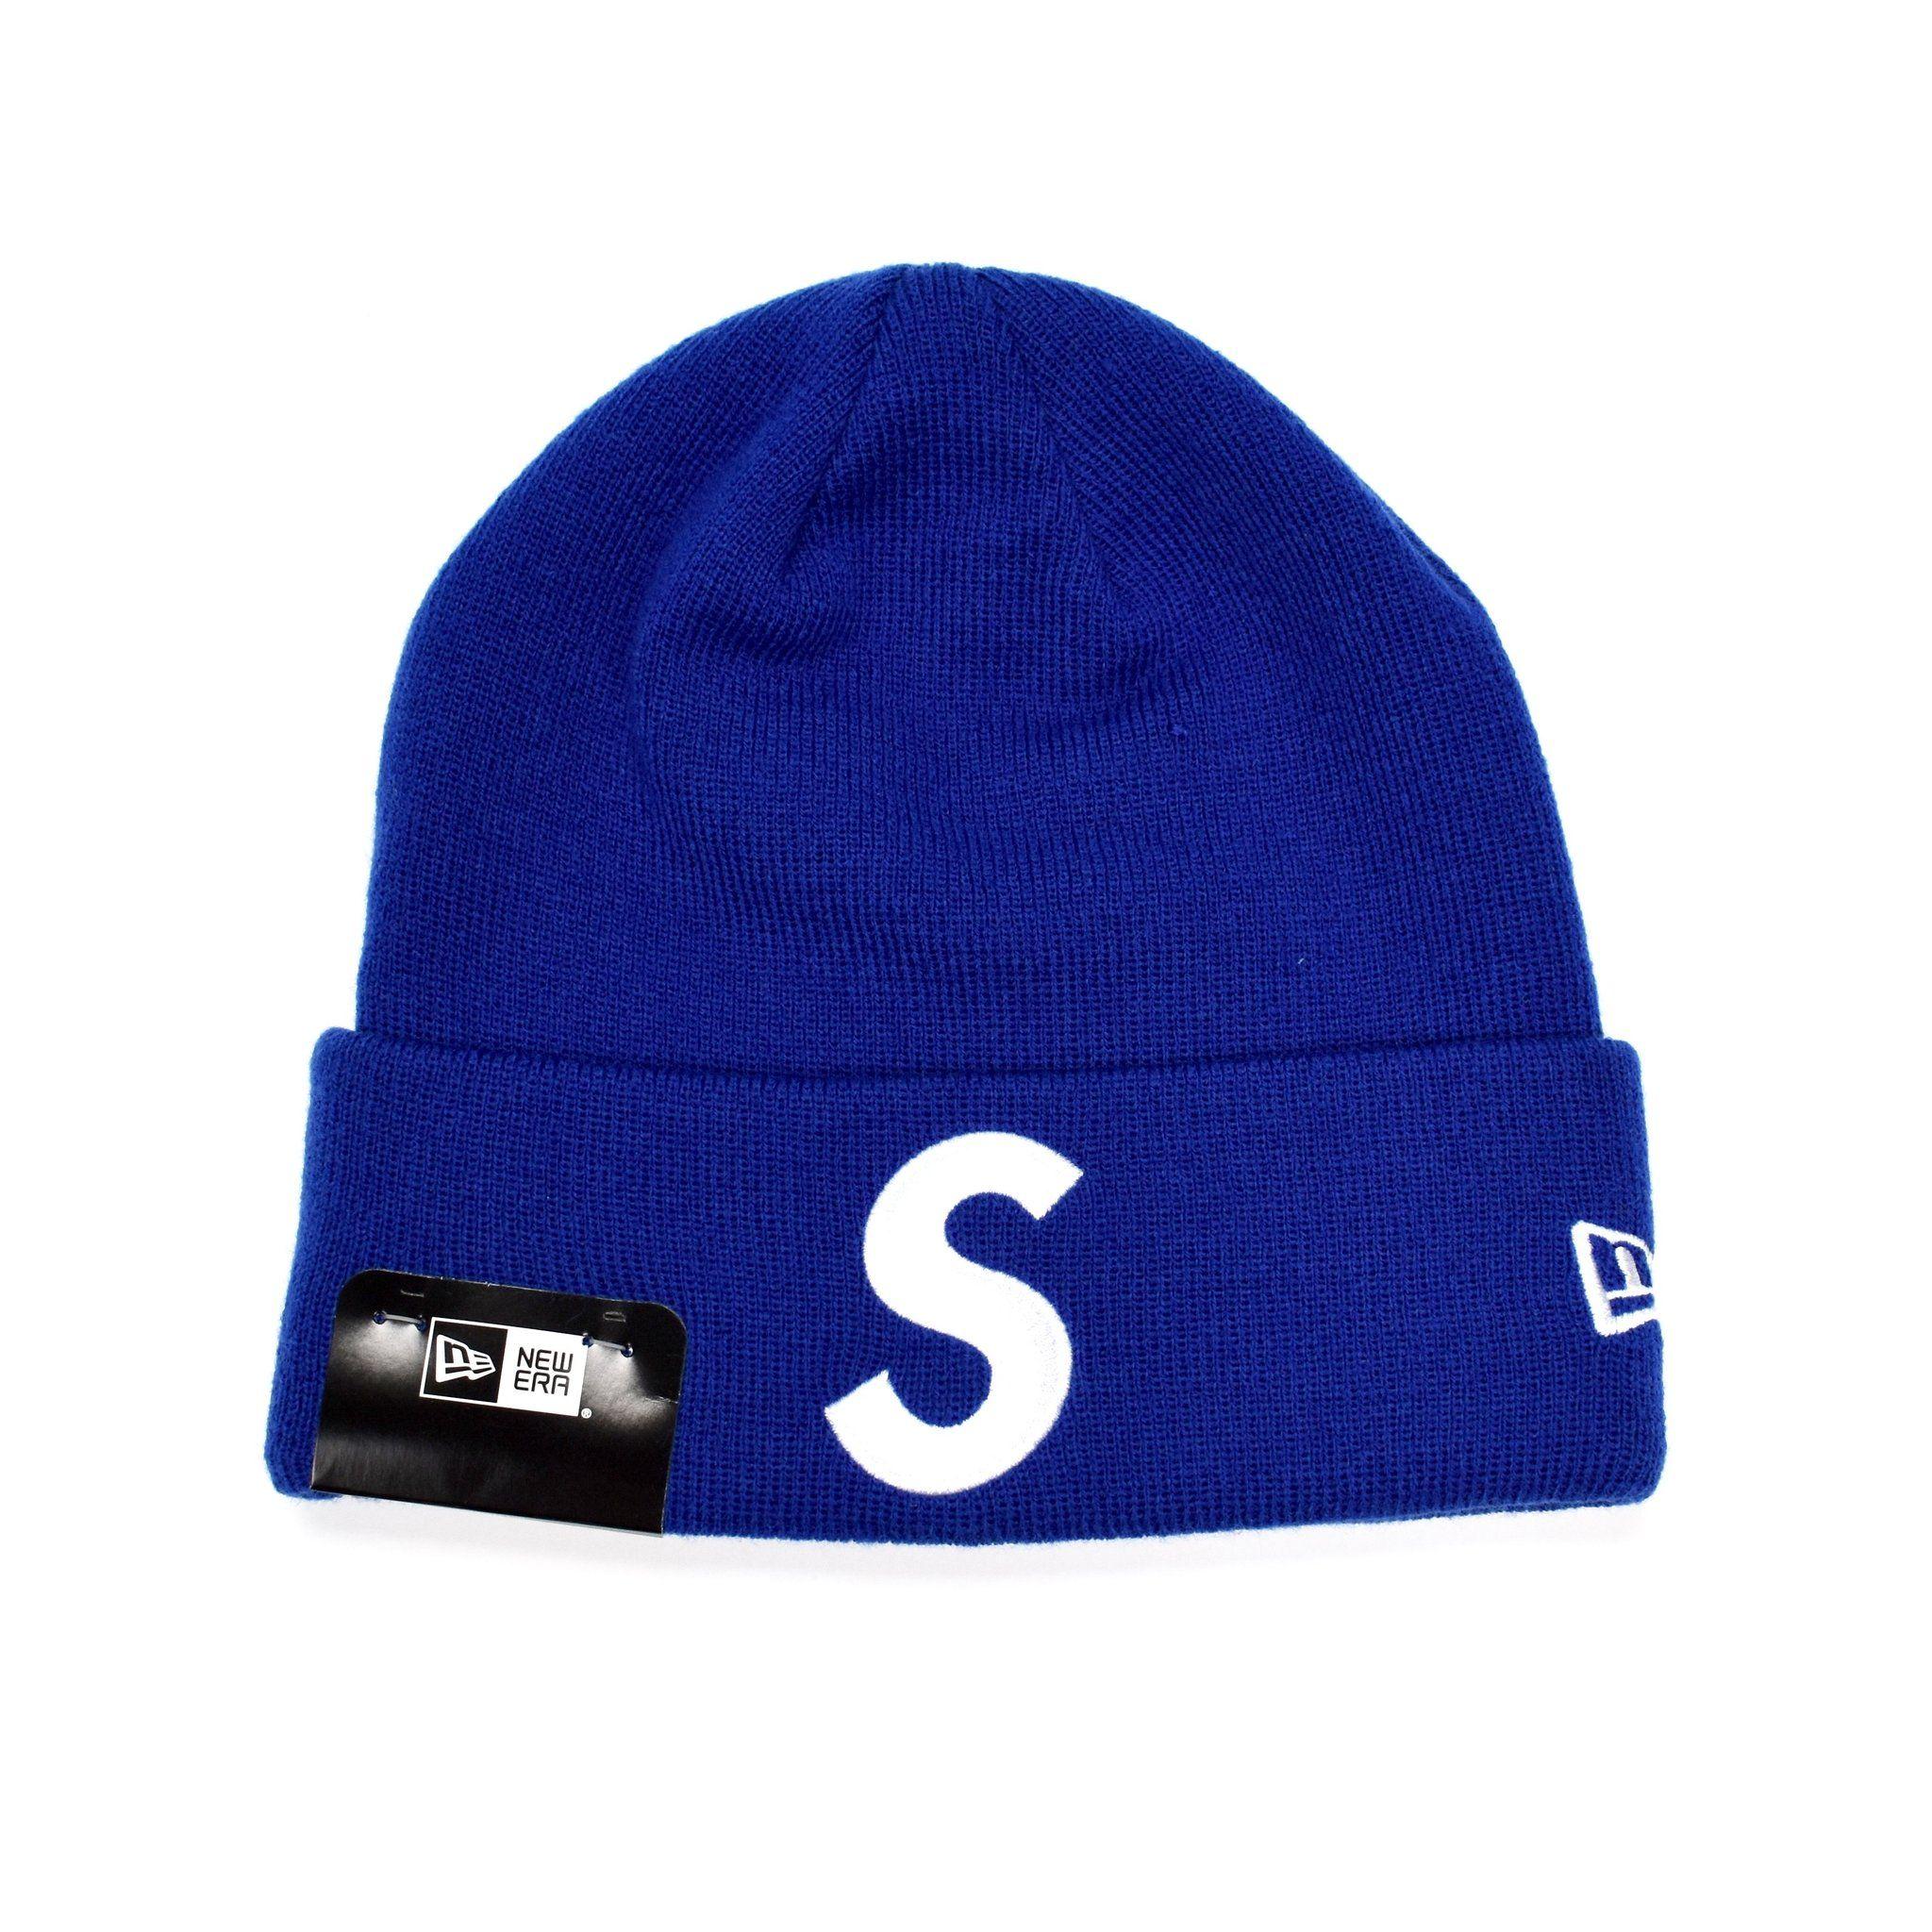 Royal Blue Supreme Logo - Supreme x New Era - Royal Blue 'S' Logo / Box Logo Beanie Knit Hat ...